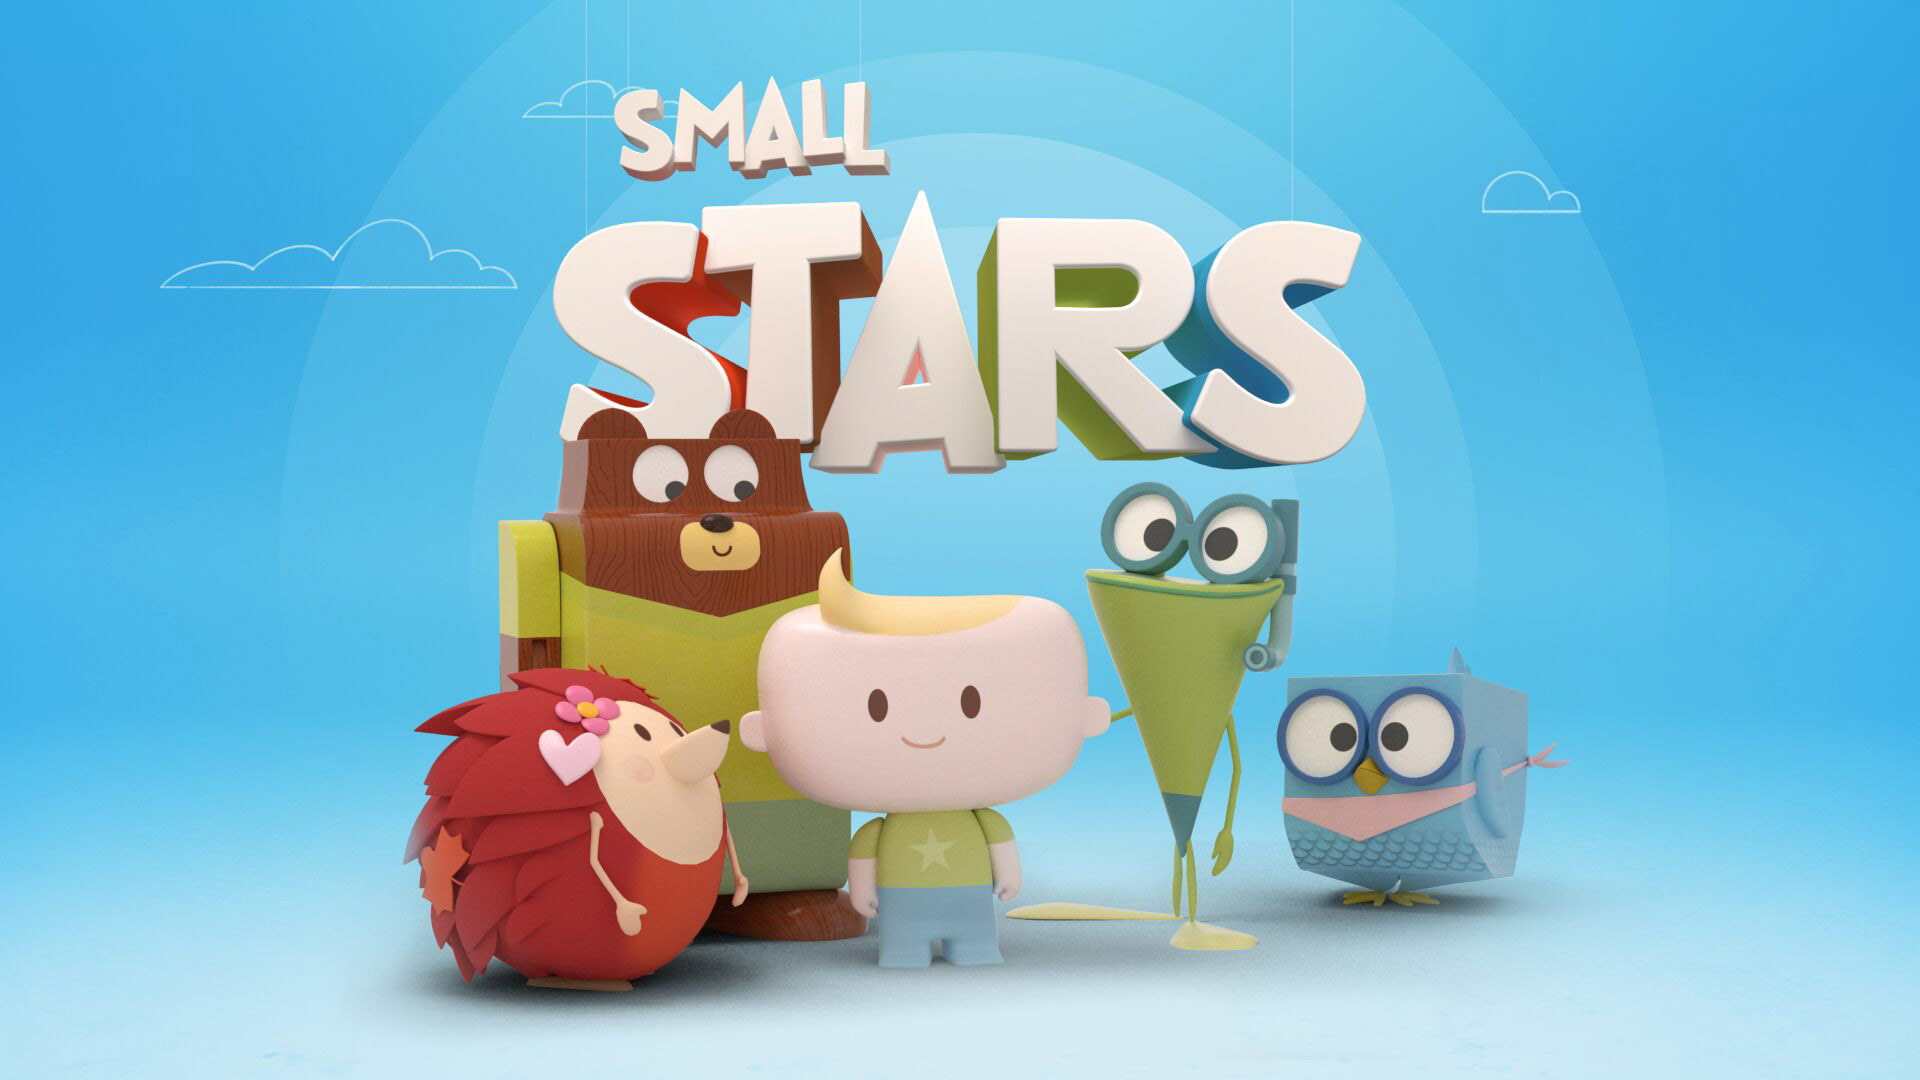 Smallest star. Small Stars. Small Stars EF. Small Stars EF игрушки.